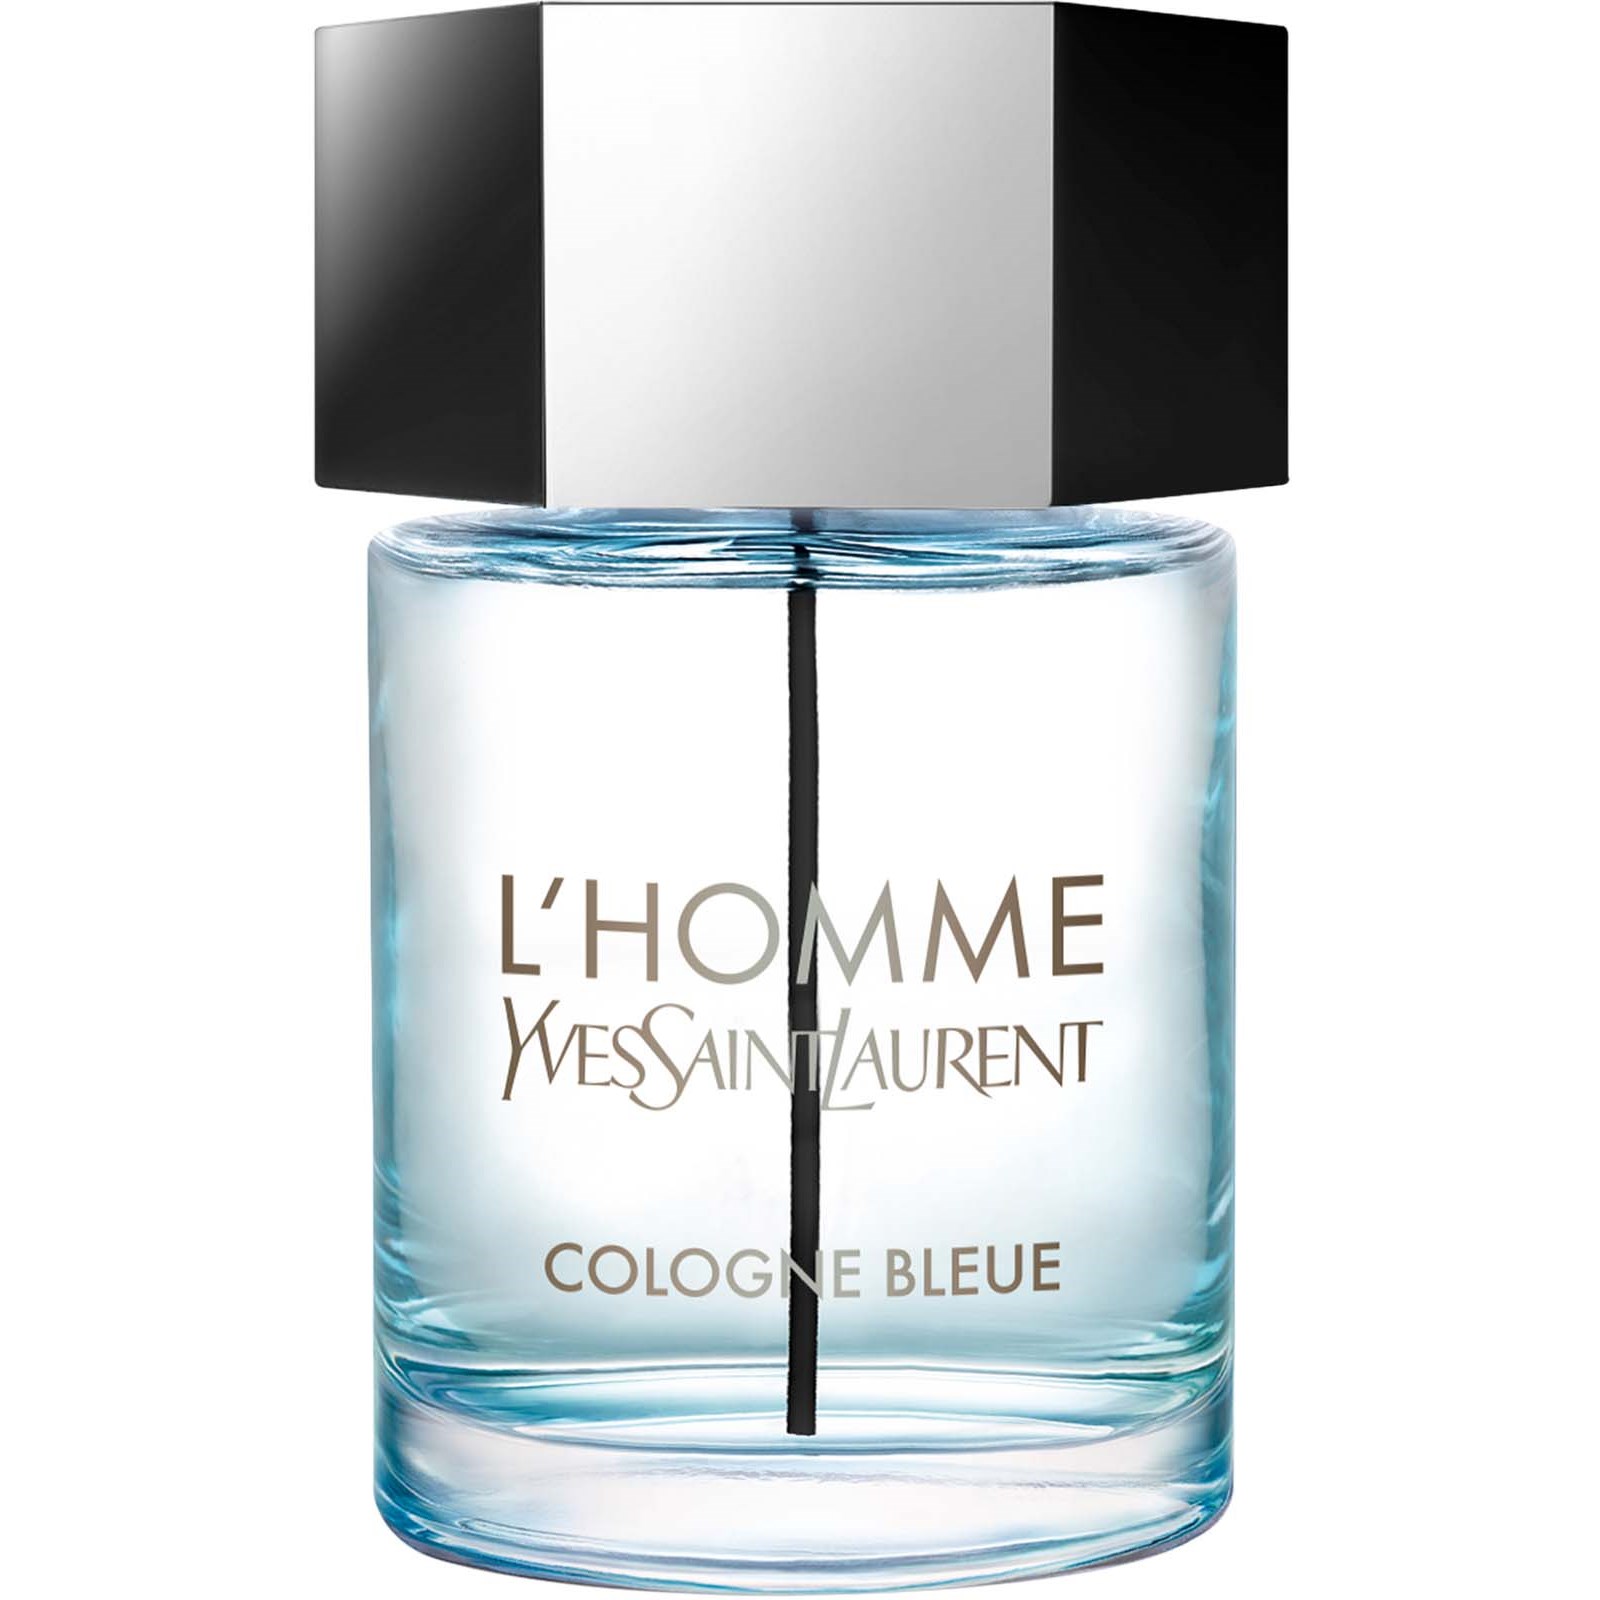 Yves Saint Laurent L'Homme Cologne Bleue 100 ml (3614271990013)